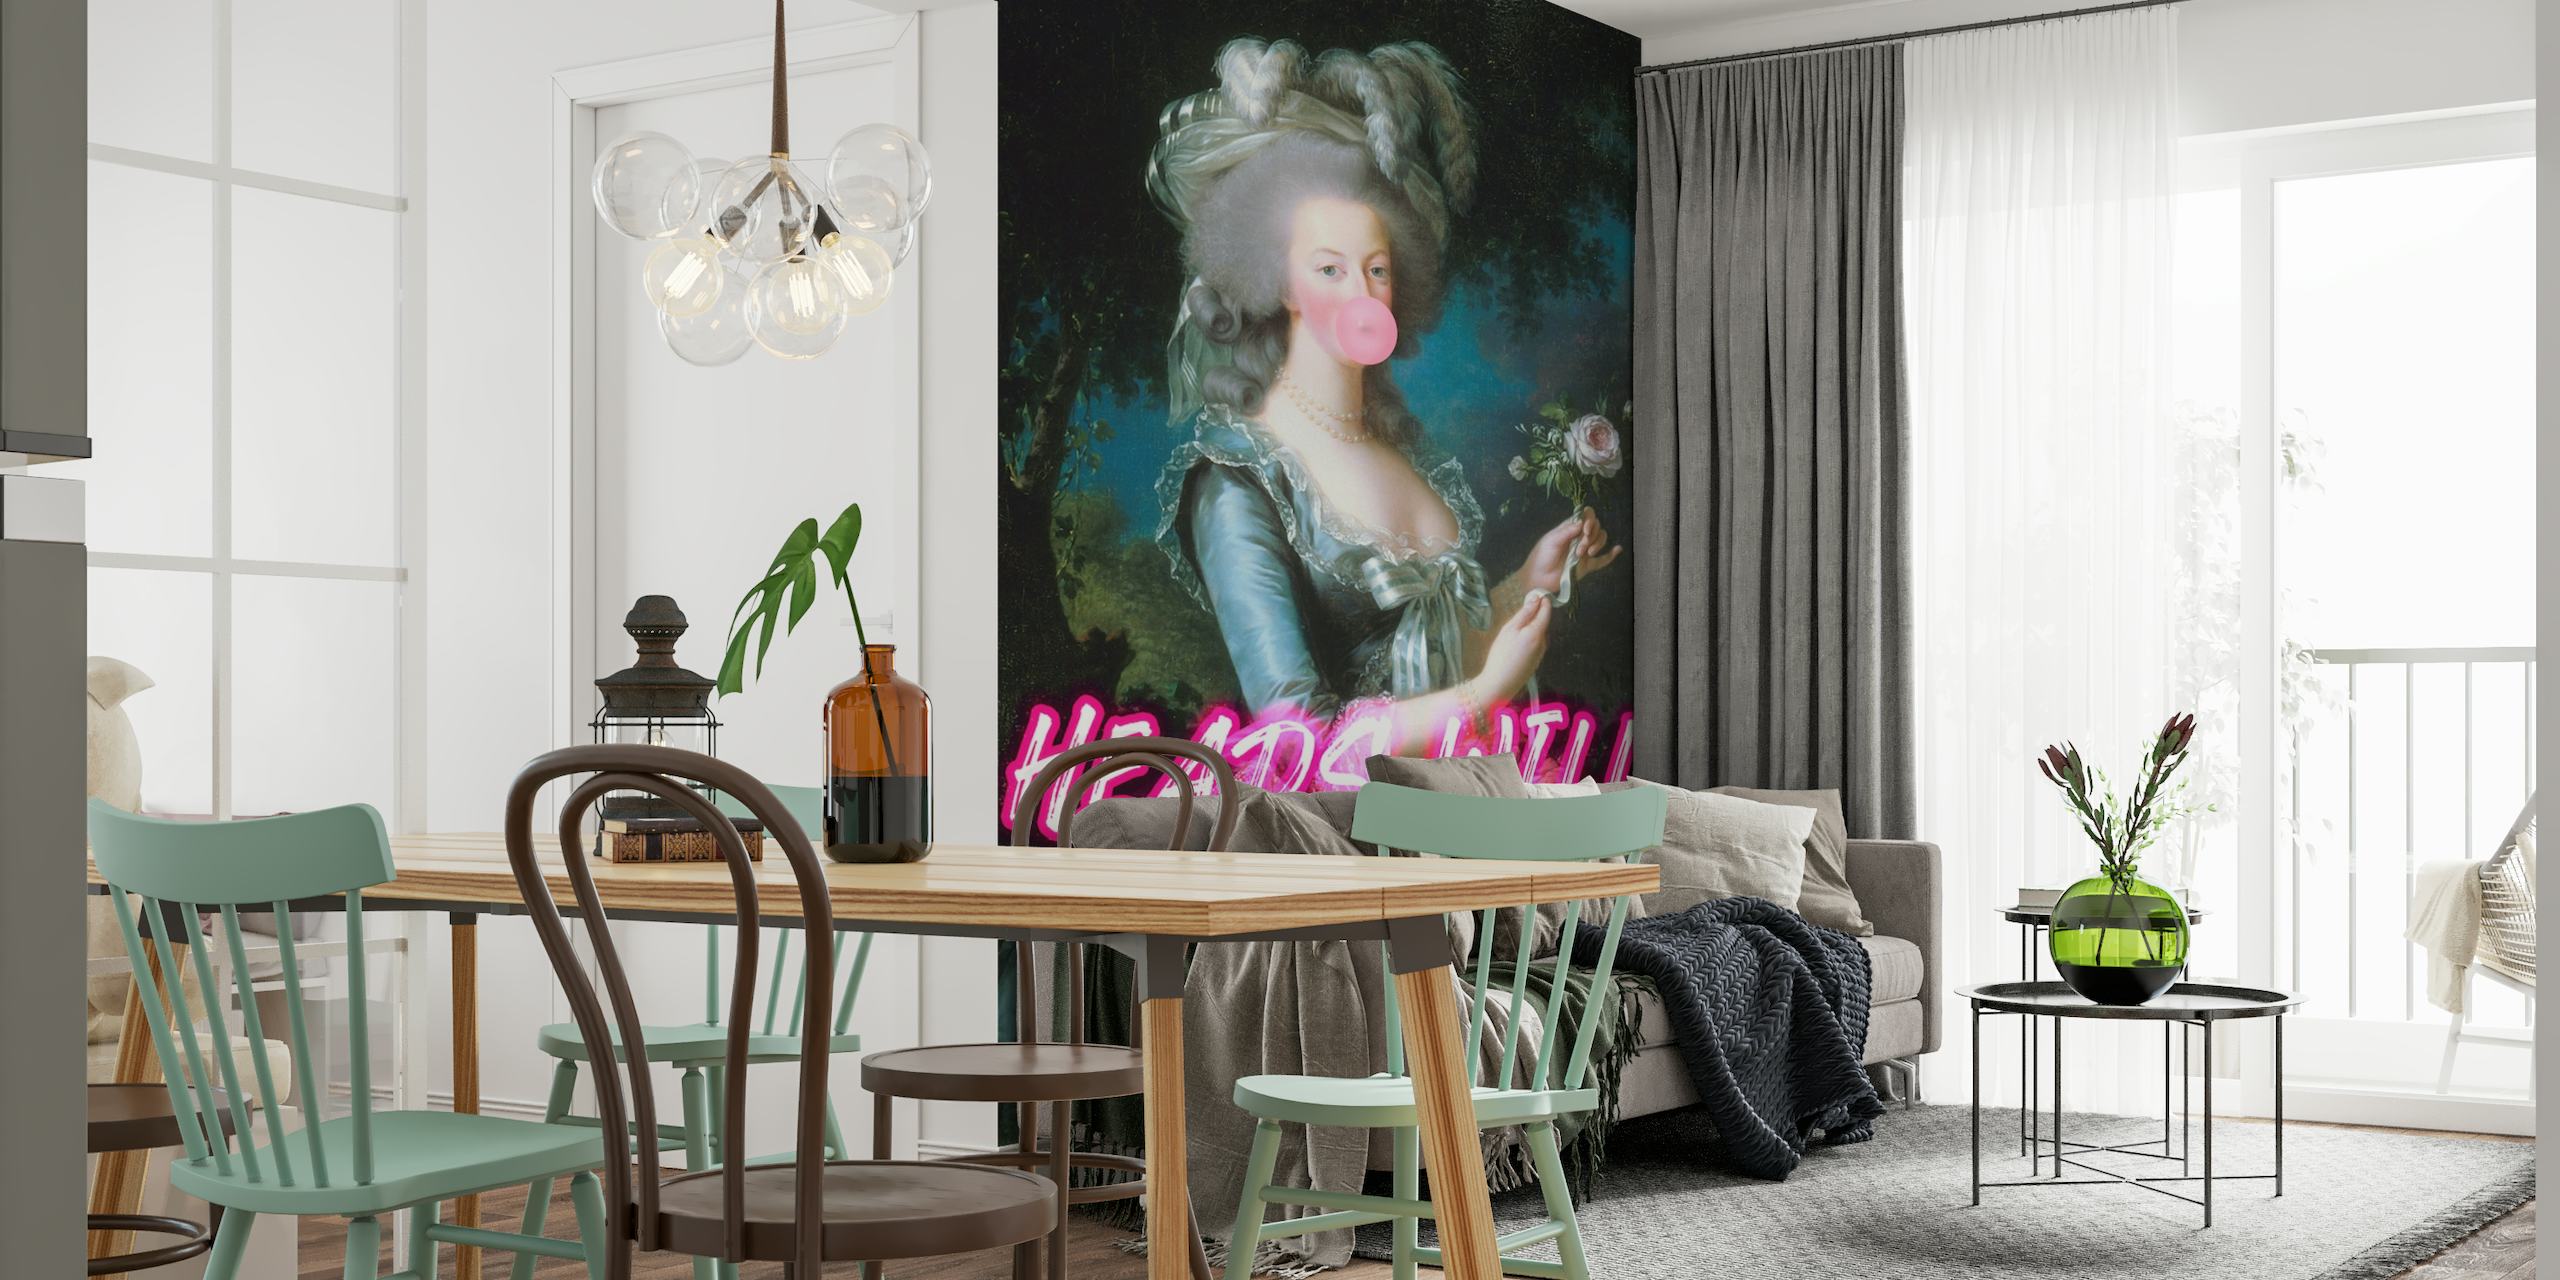 Marie Antoinette figur med neon tekst og tyggegummi veggmaleri